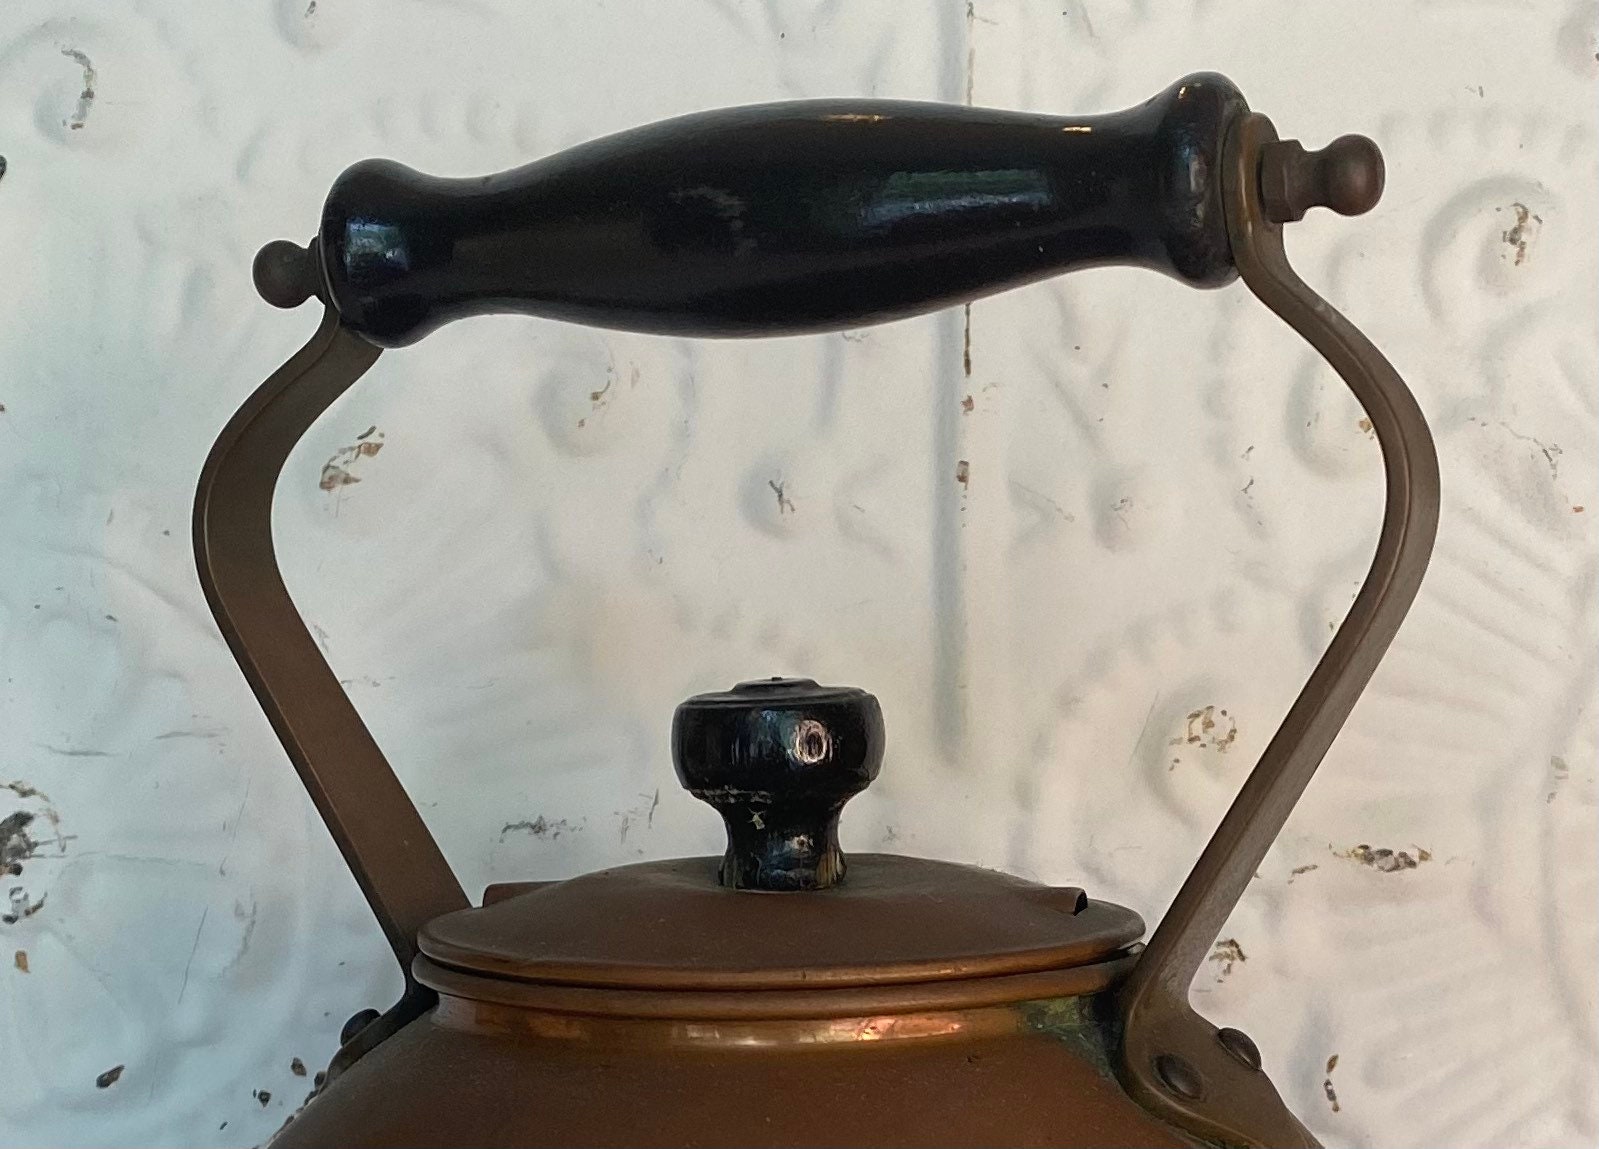 Universal E771 Classic Antique 1913 Electric Tea Kettle Pot